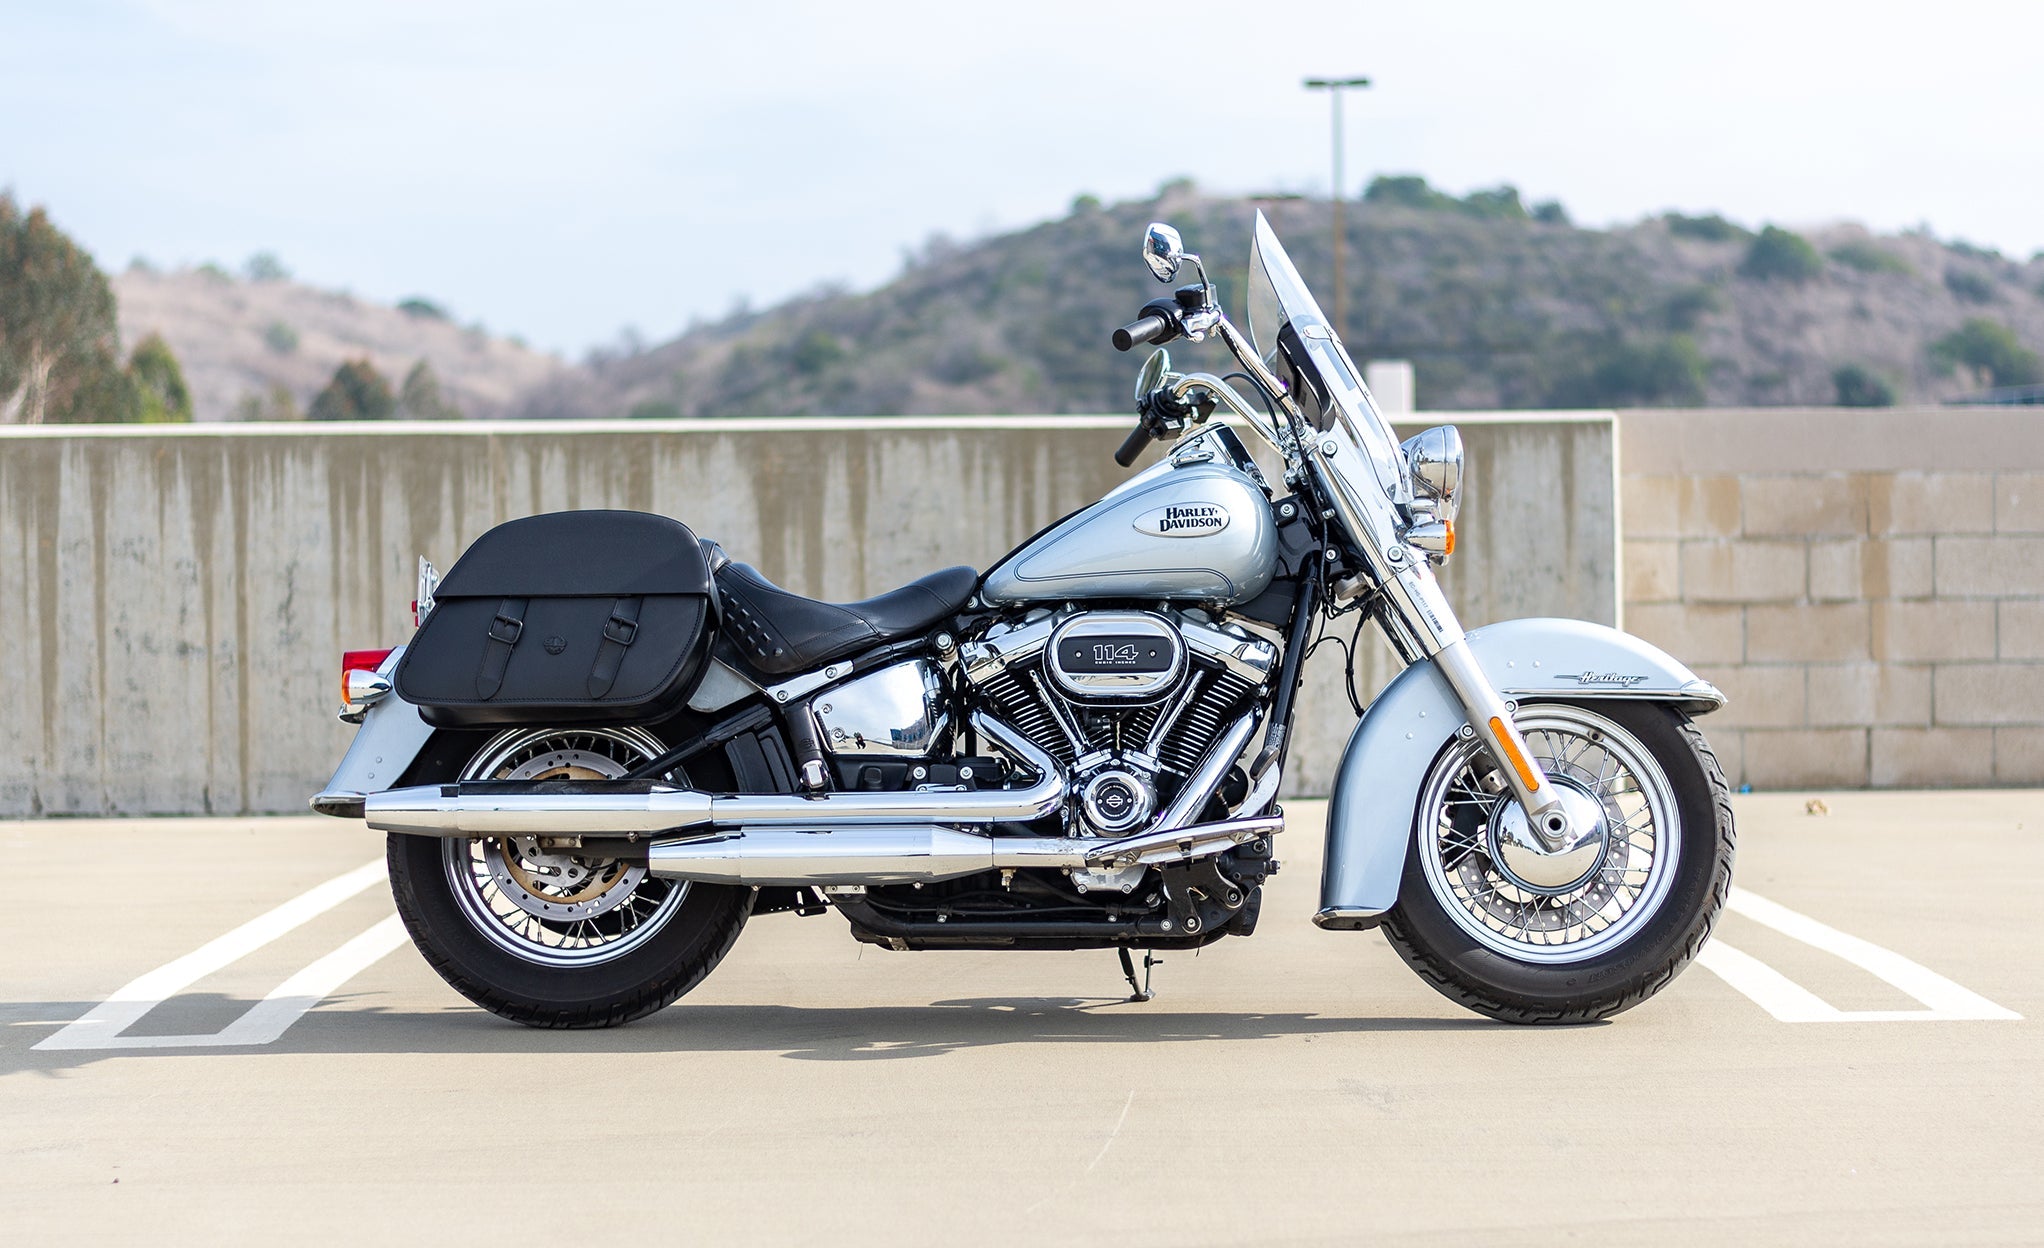 Viking Baelor Large Leather Motorcycle Saddlebags For Harley Davidson Softail Heritage Flst I C Ci @expand